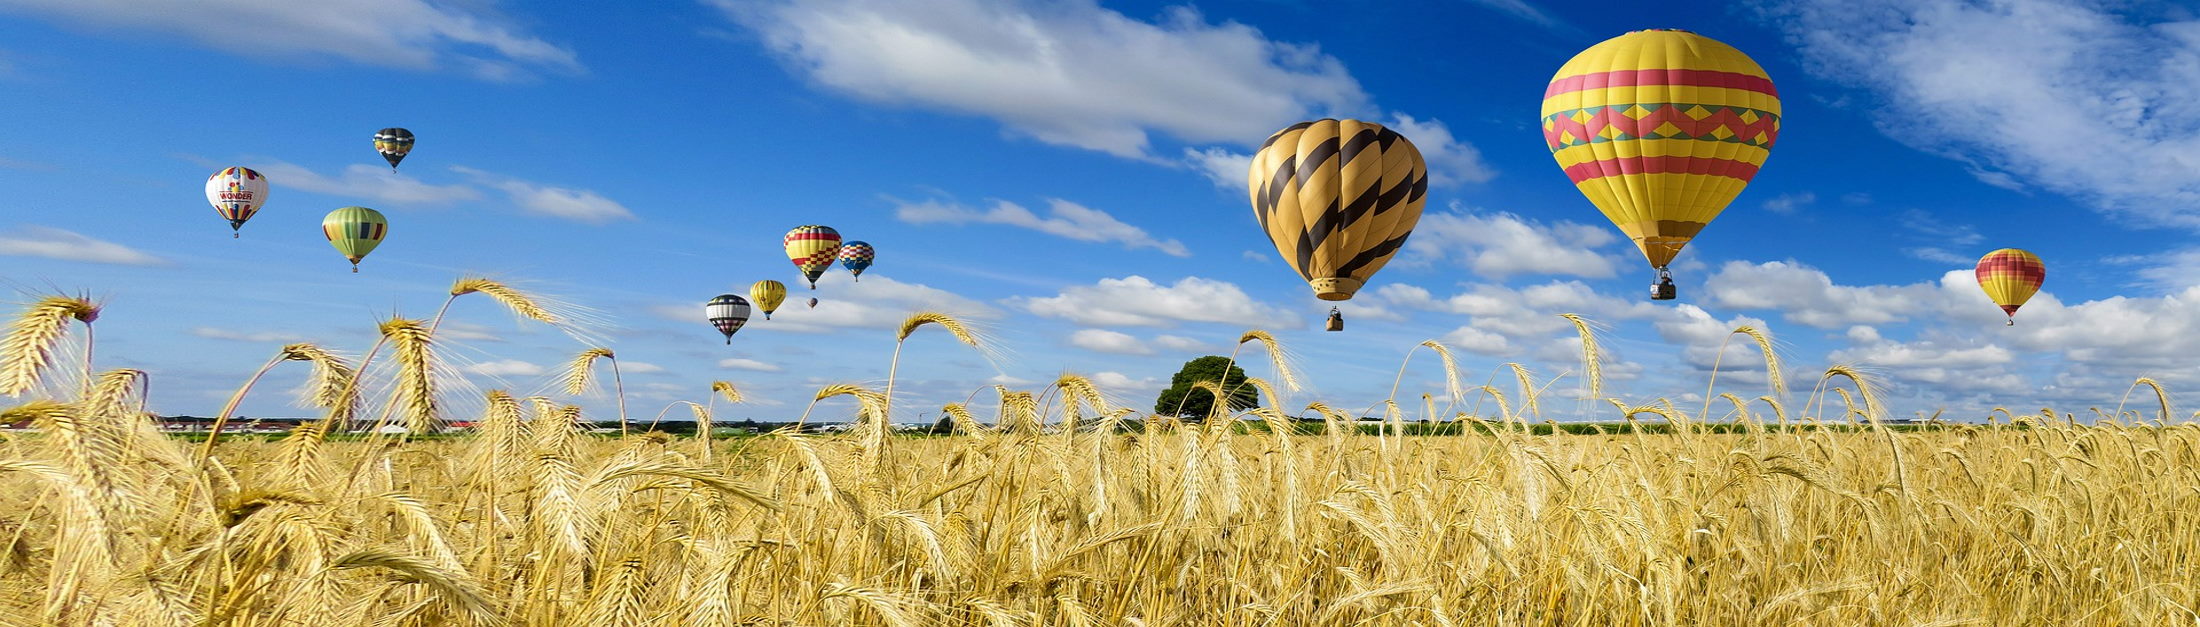 Heißluftballons über einem Kornfeld